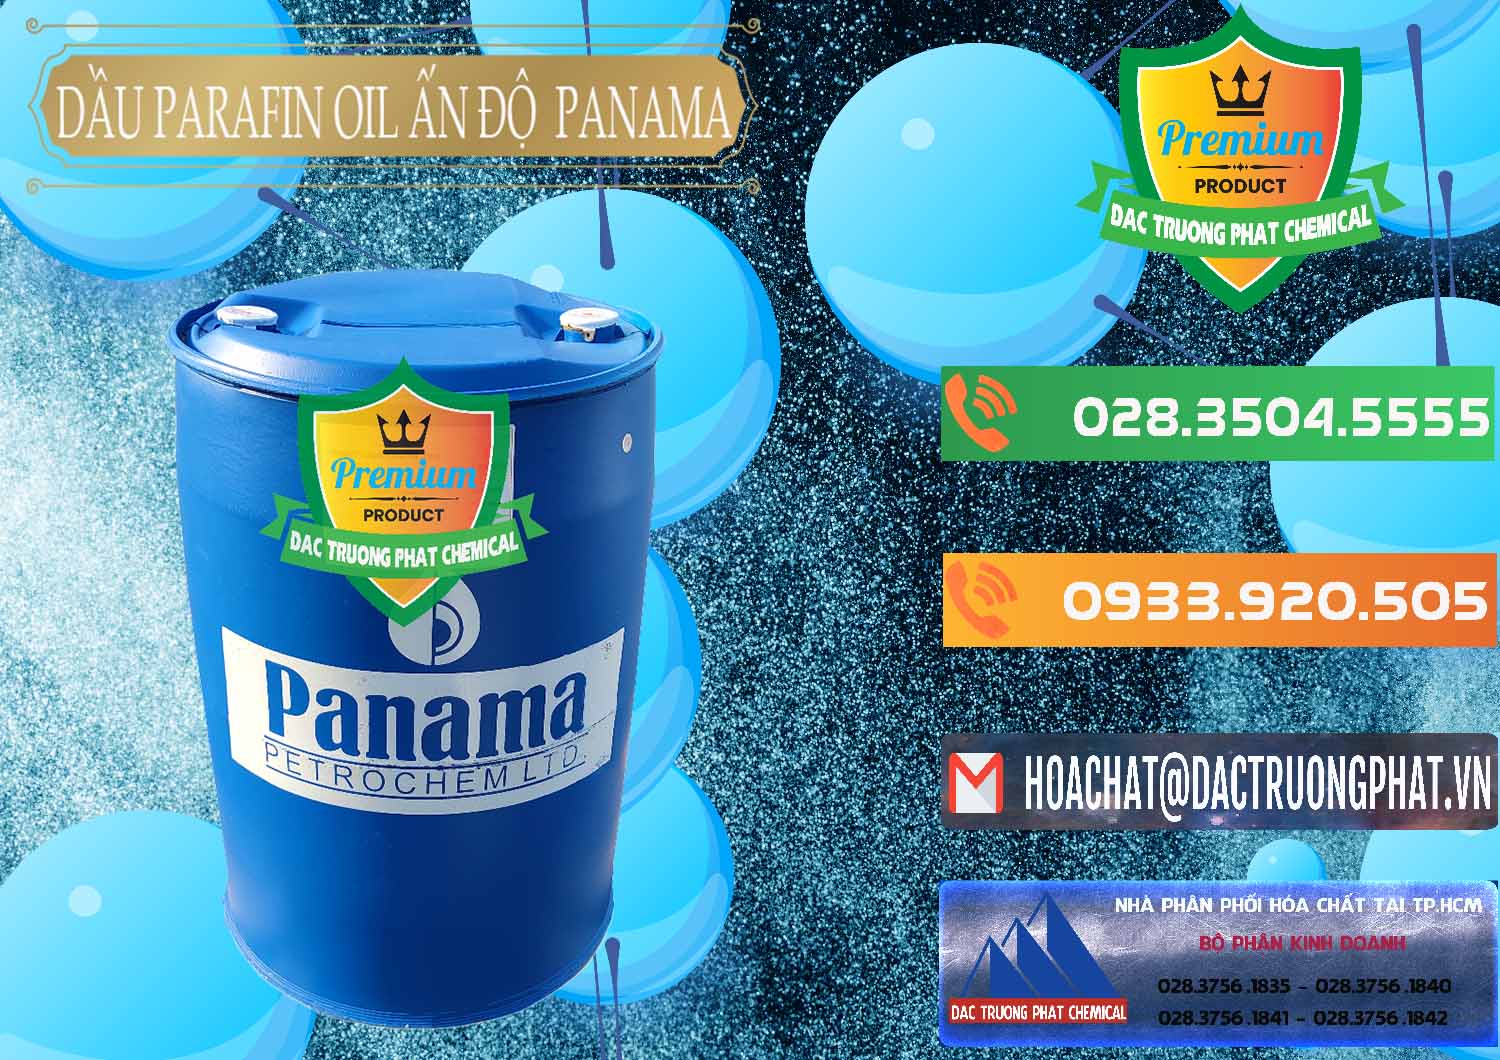 Nơi chuyên kinh doanh & bán Dầu Parafin Oil Panama Ấn Độ India - 0061 - Nhập khẩu & cung cấp hóa chất tại TP.HCM - hoachatxulynuoc.com.vn